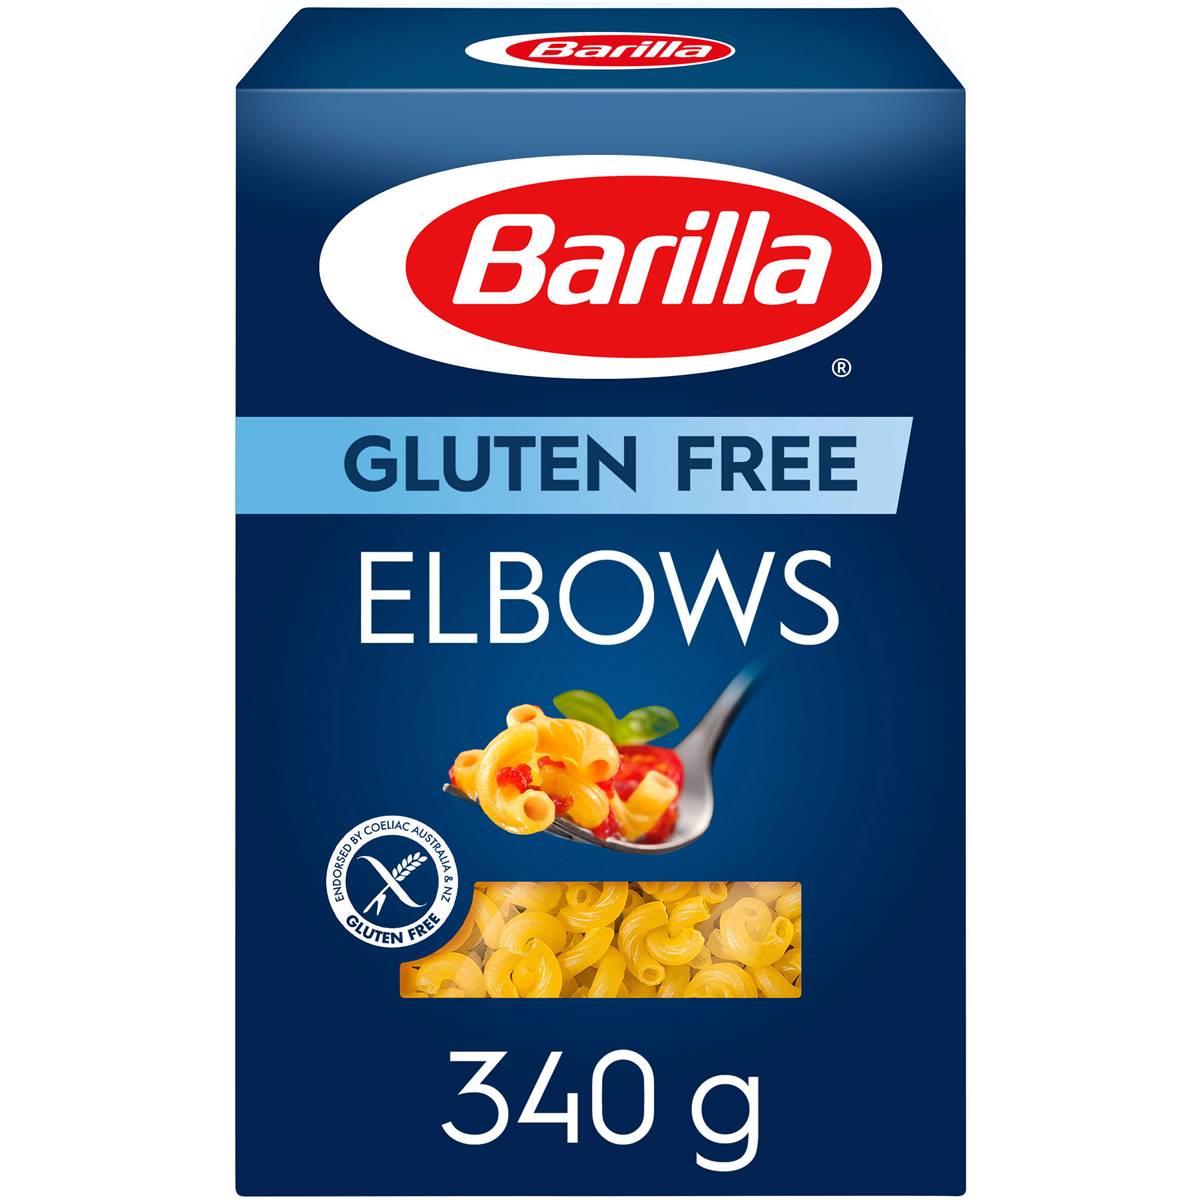 Calories in Barilla Pasta Elbows Gluten Free Gluten Free